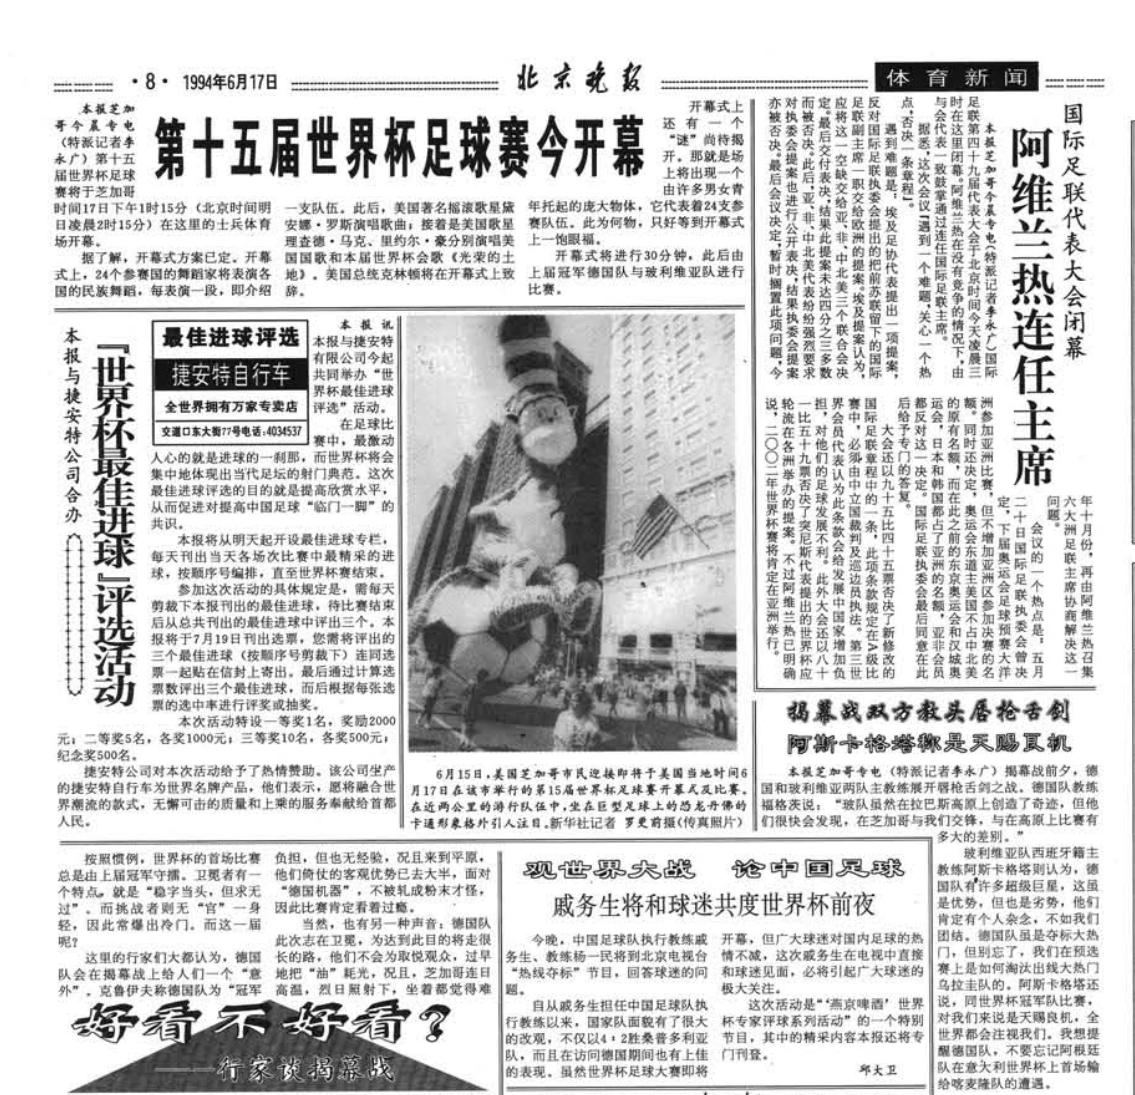 各有滋味在其中 回顾北京日报社32年世界杯报道历程---1994年和1998年